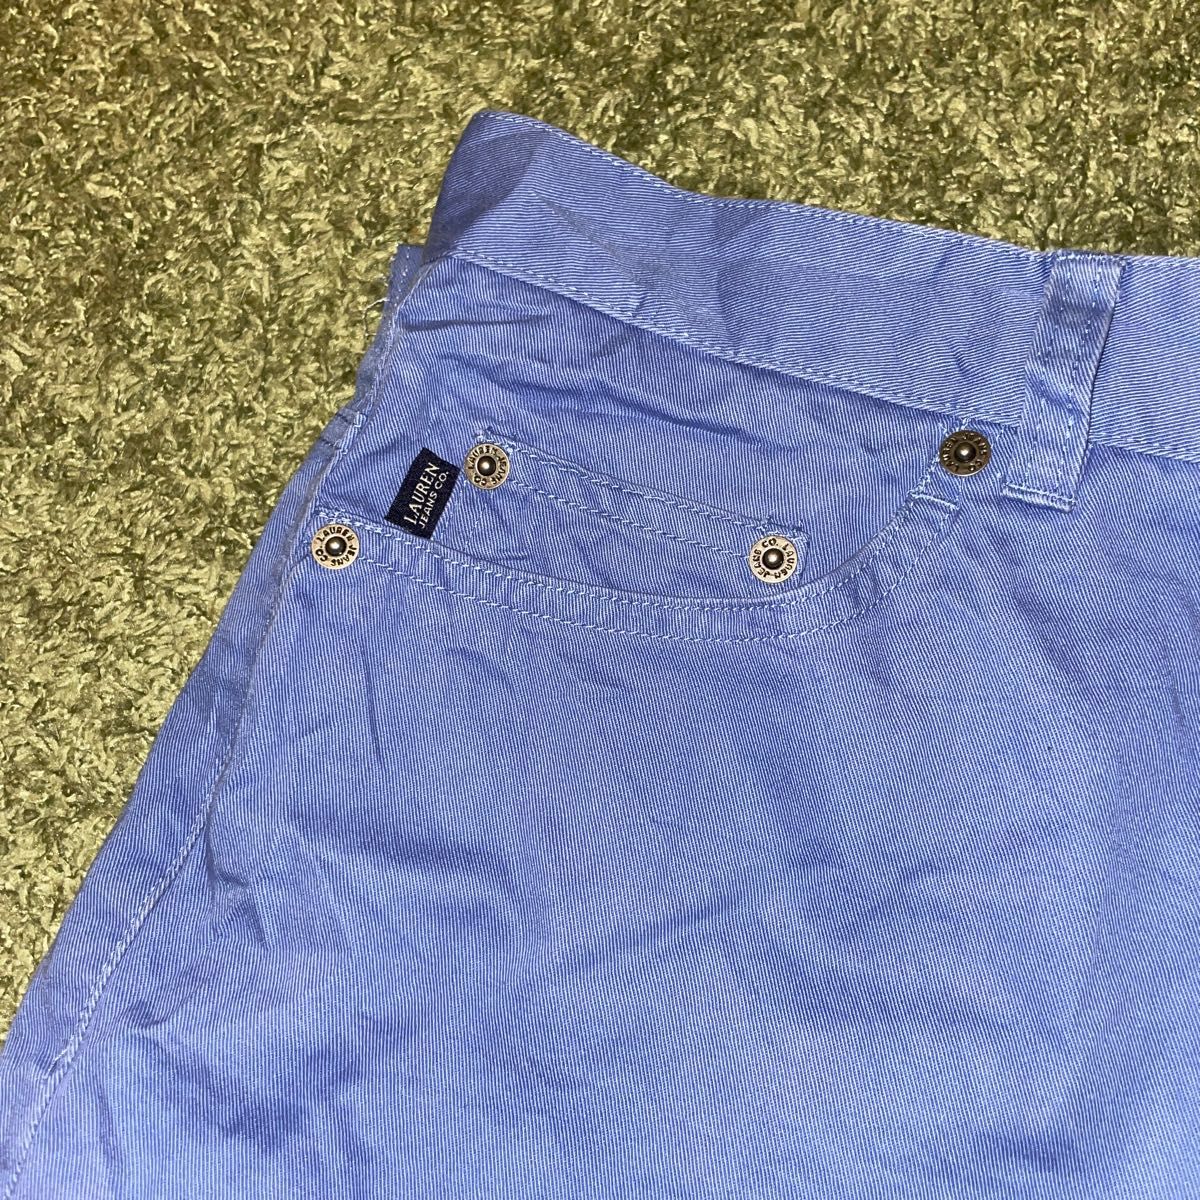 Ralph Lauren ラルフローレン lauren jeans co. ワイドワークパンツ チノパン 90s ヴィンテージ  